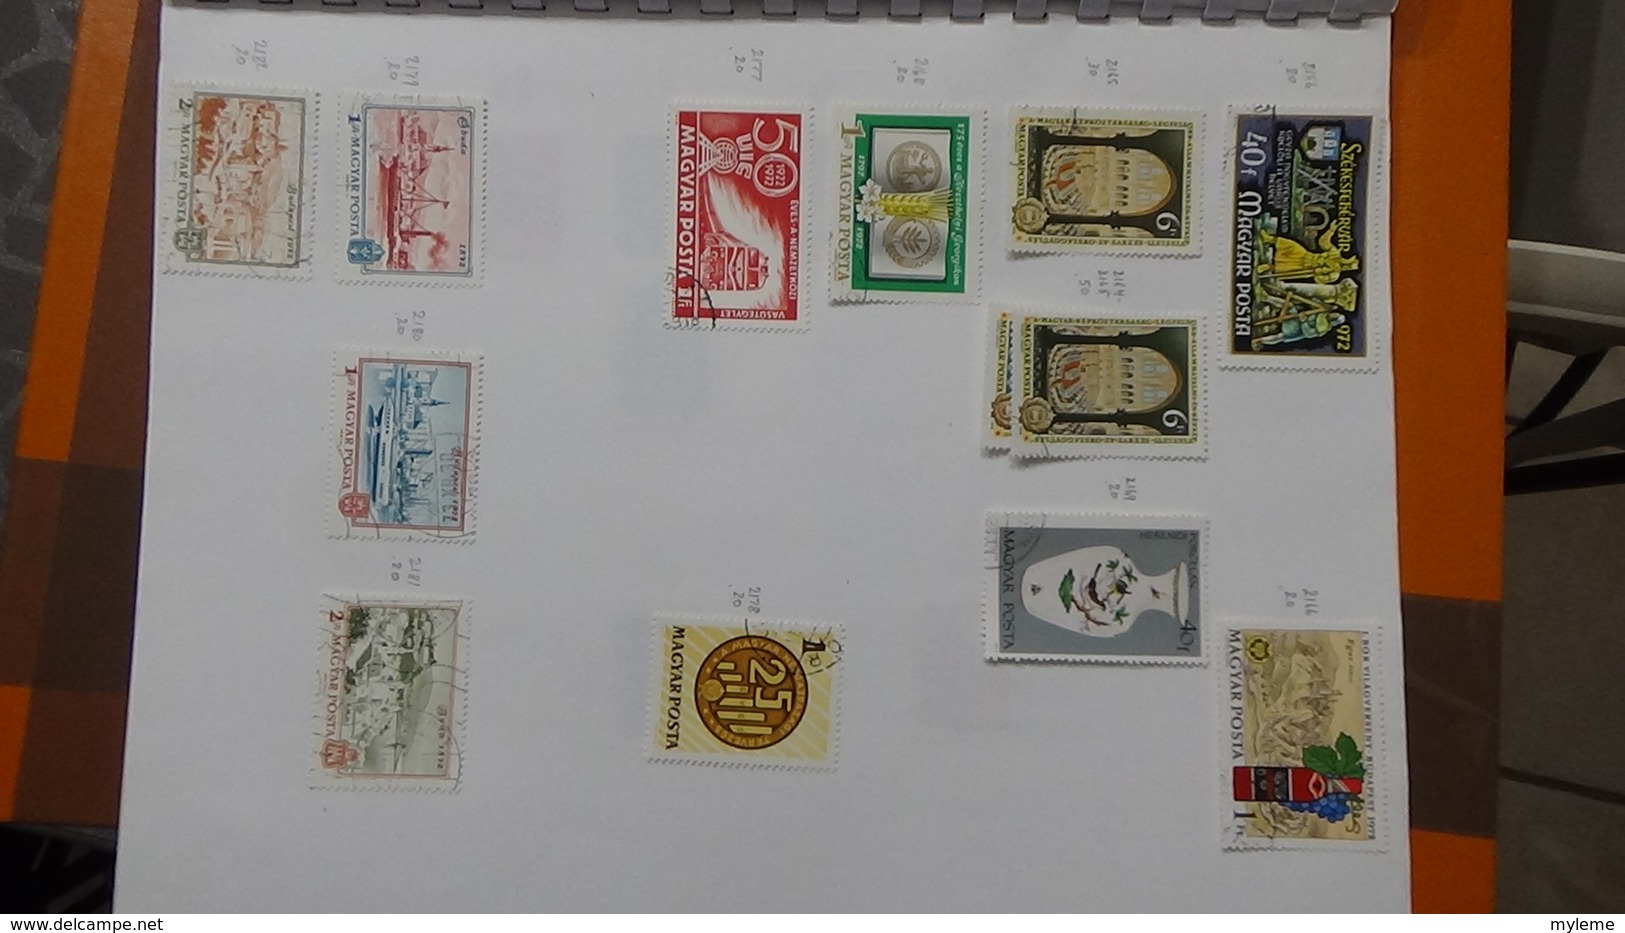 A239 Cahier de timbres de Hongrie dont fin de catalogue. A saisir !!! Voir commentaires